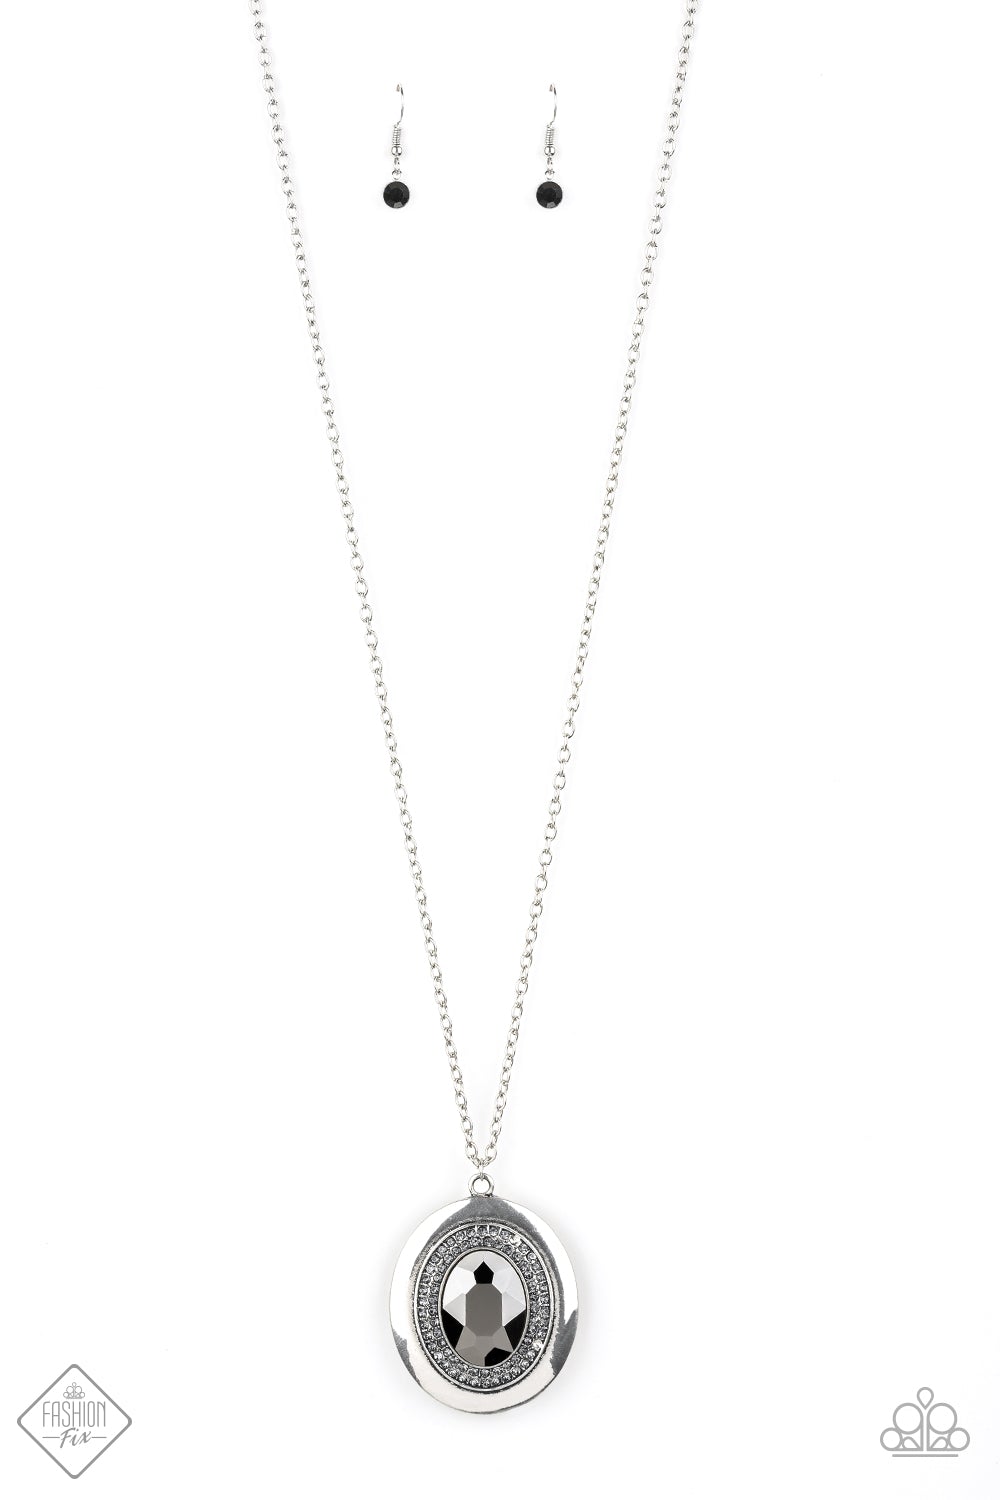 . Castle Couture - Silver Necklace